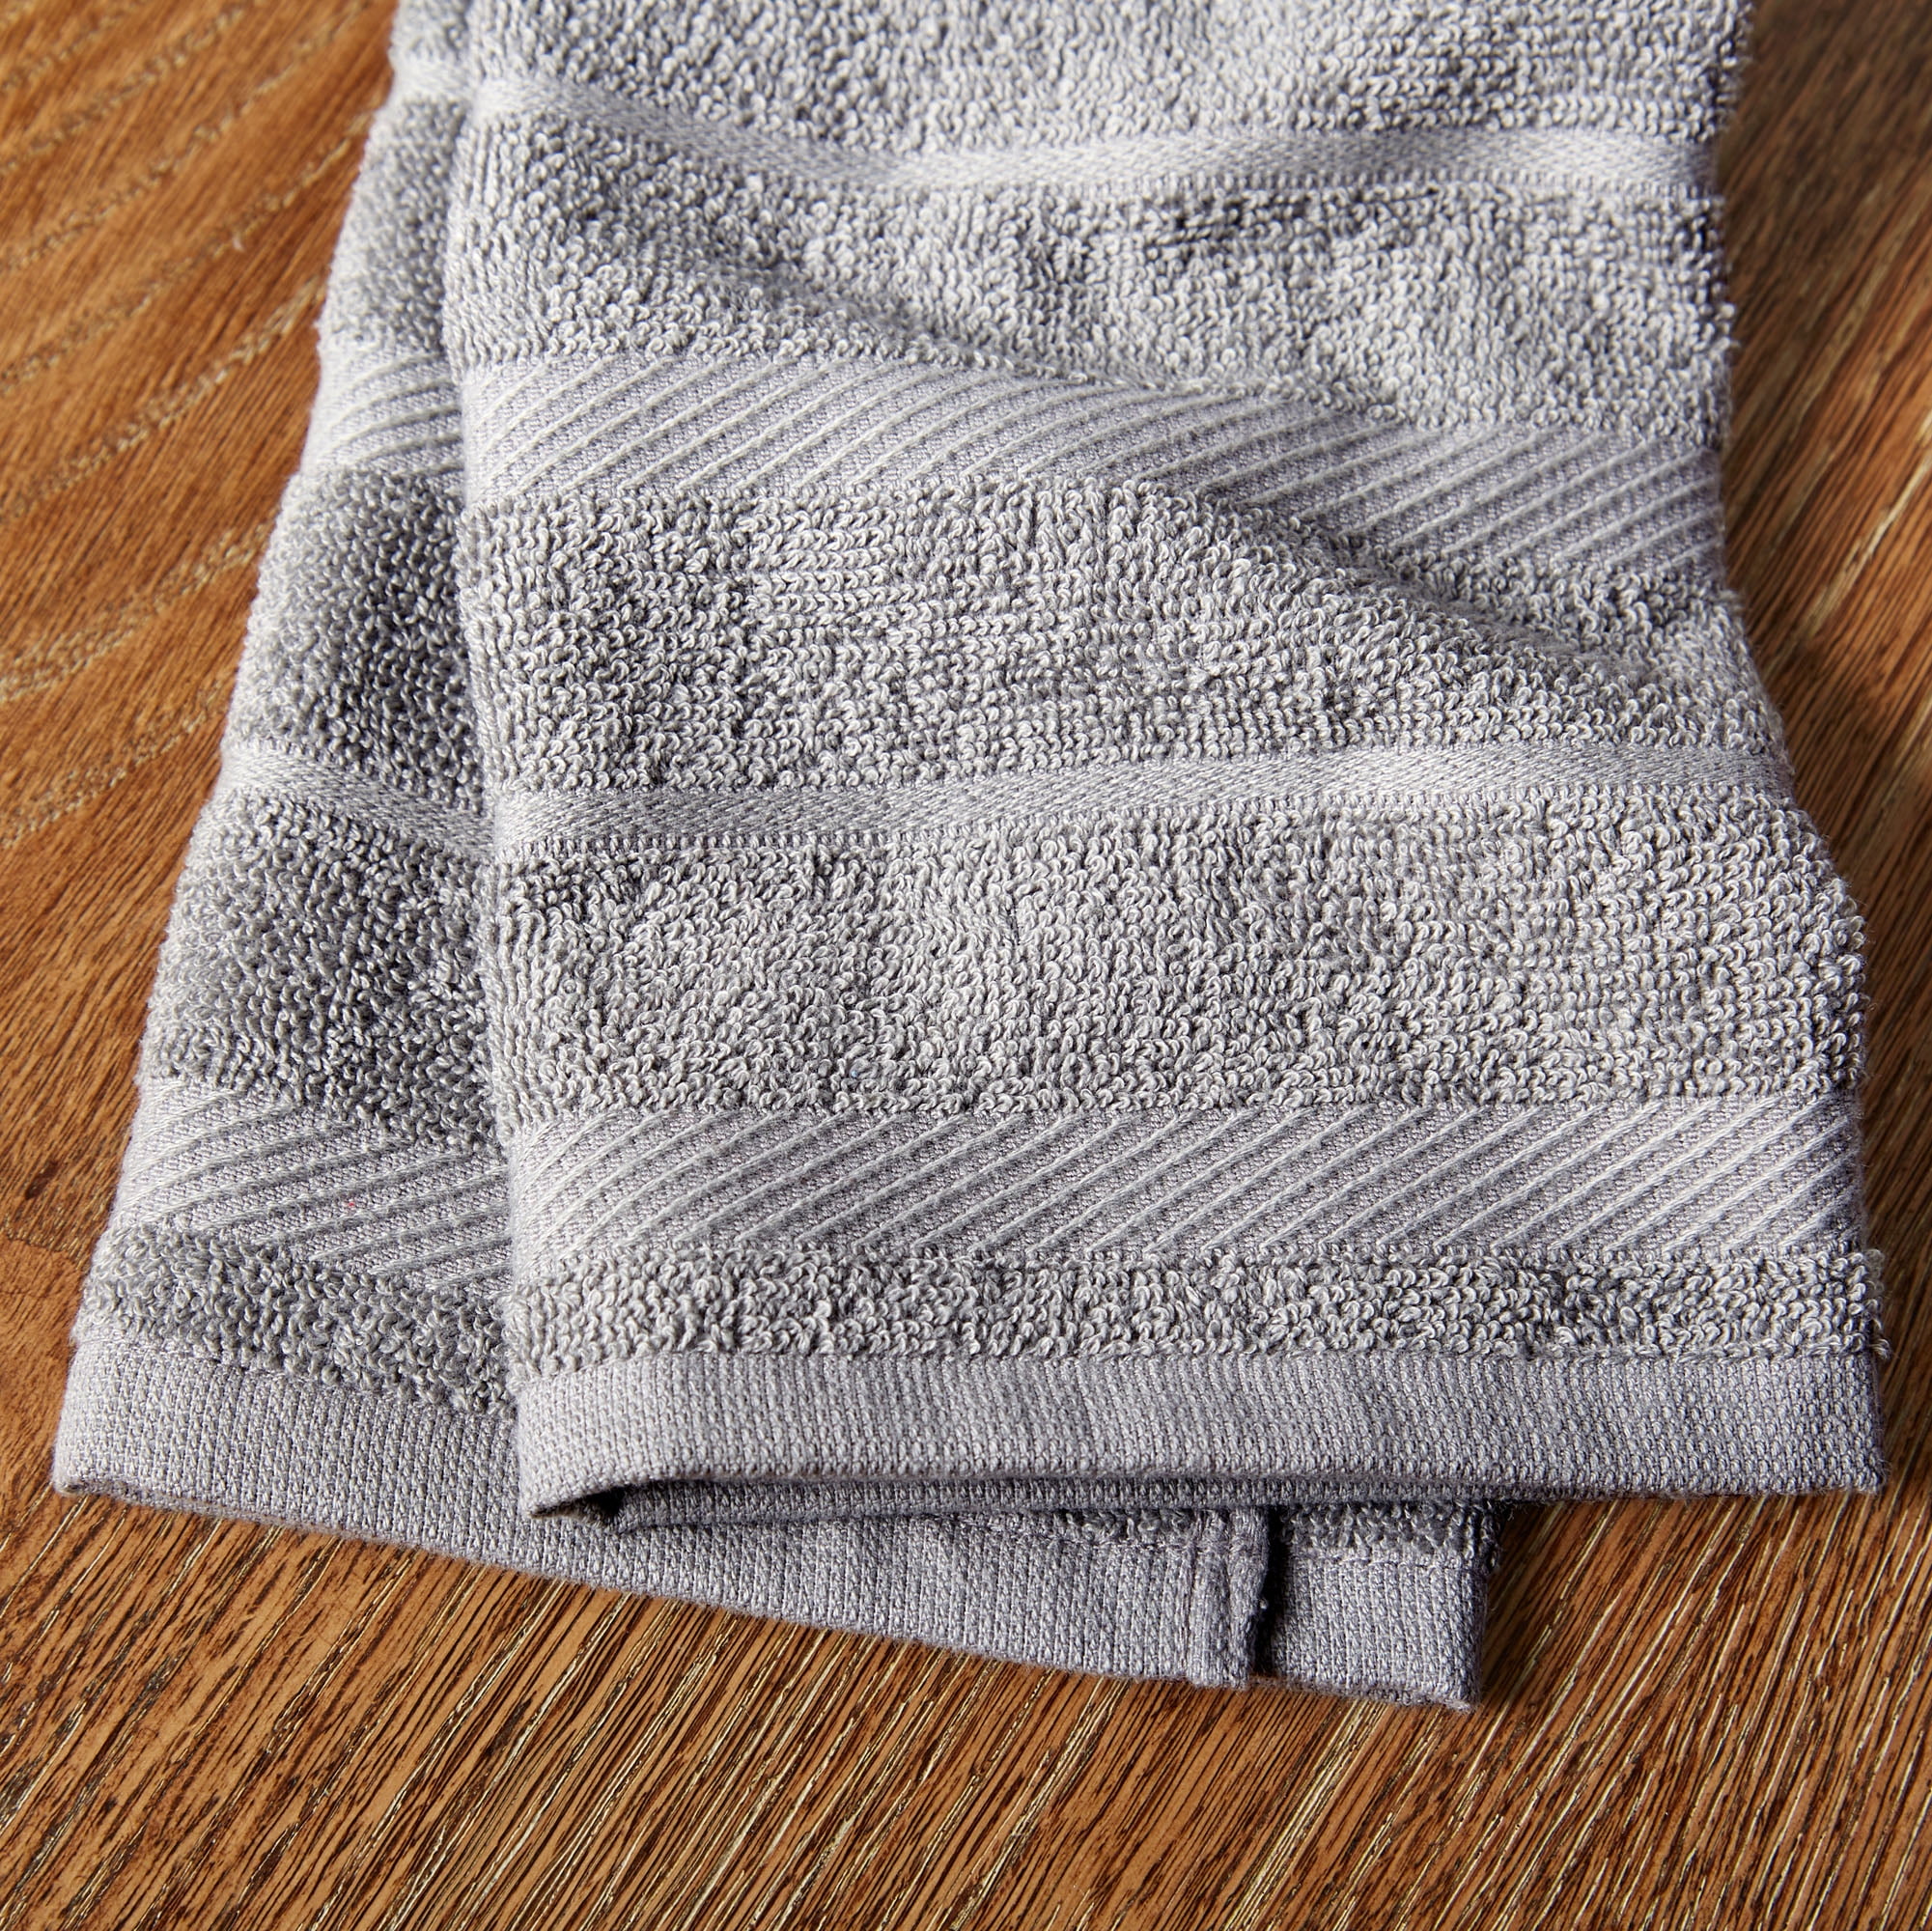  KitchenAid Albany Kitchen Towel 4-Pack Set,Cotton, Passion  Red/White, 16x26 : Home & Kitchen